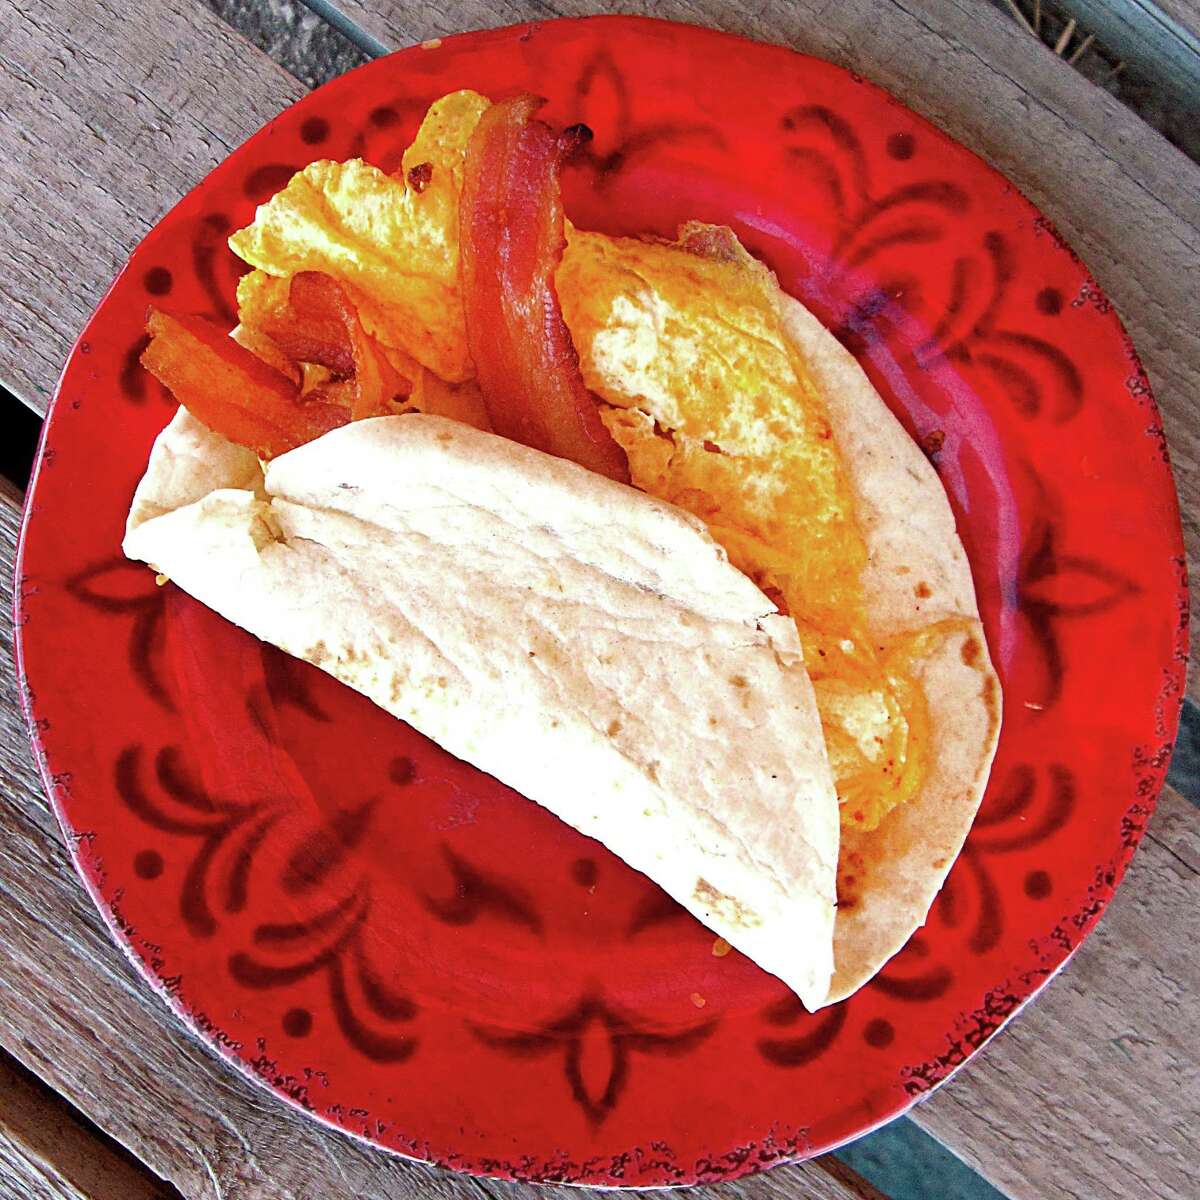 Bacon and egg taco on a flour tortilla from Cazadores Restaurant & Motel.